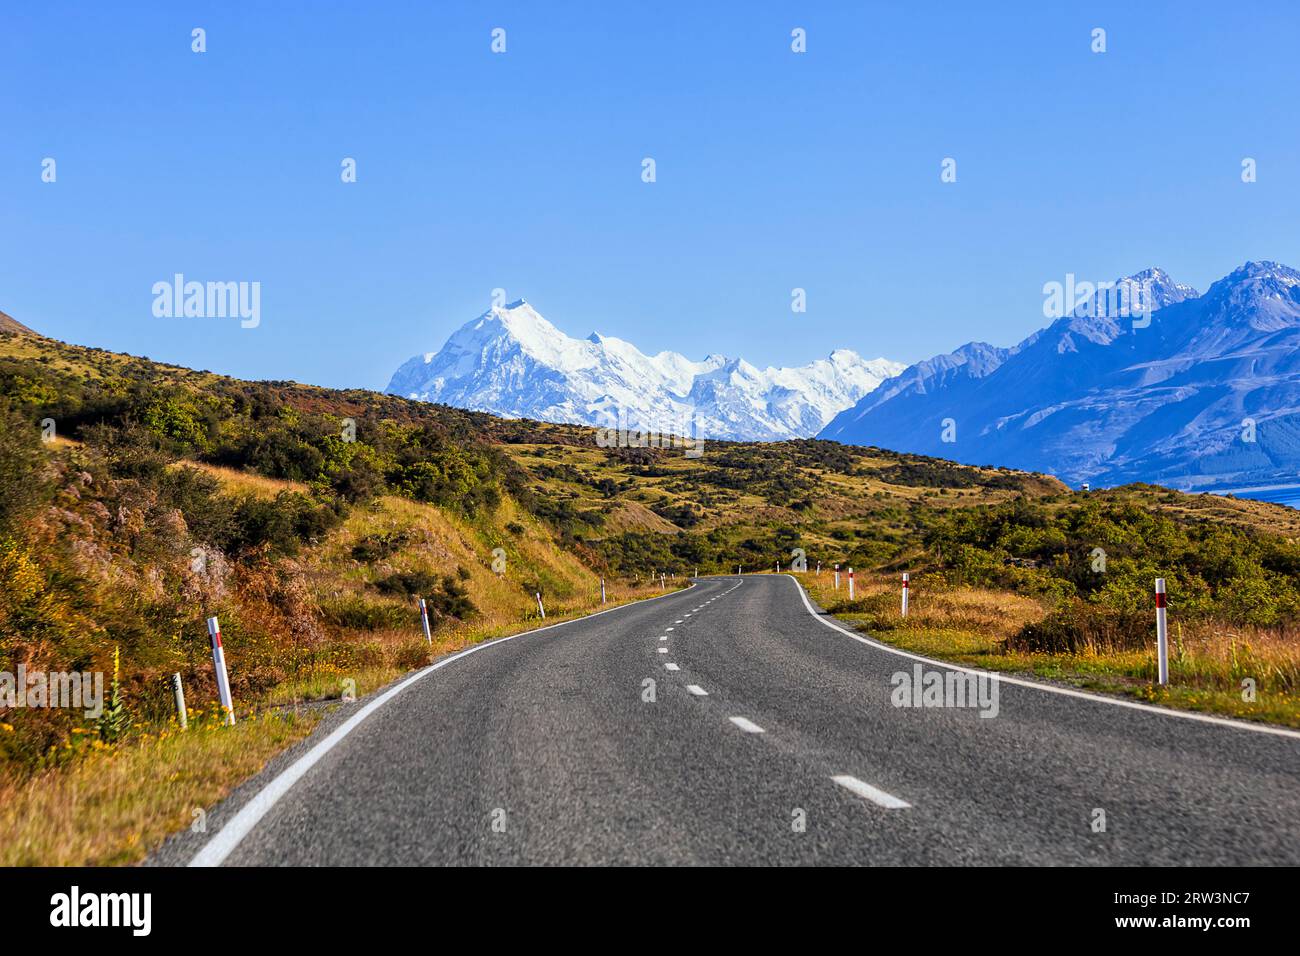 Fahren Sie auf dem Highway 80, der zum Mt Cook Mountain Range am Ufer des Lake Pukaki in Neuseeland führt. Stockfoto